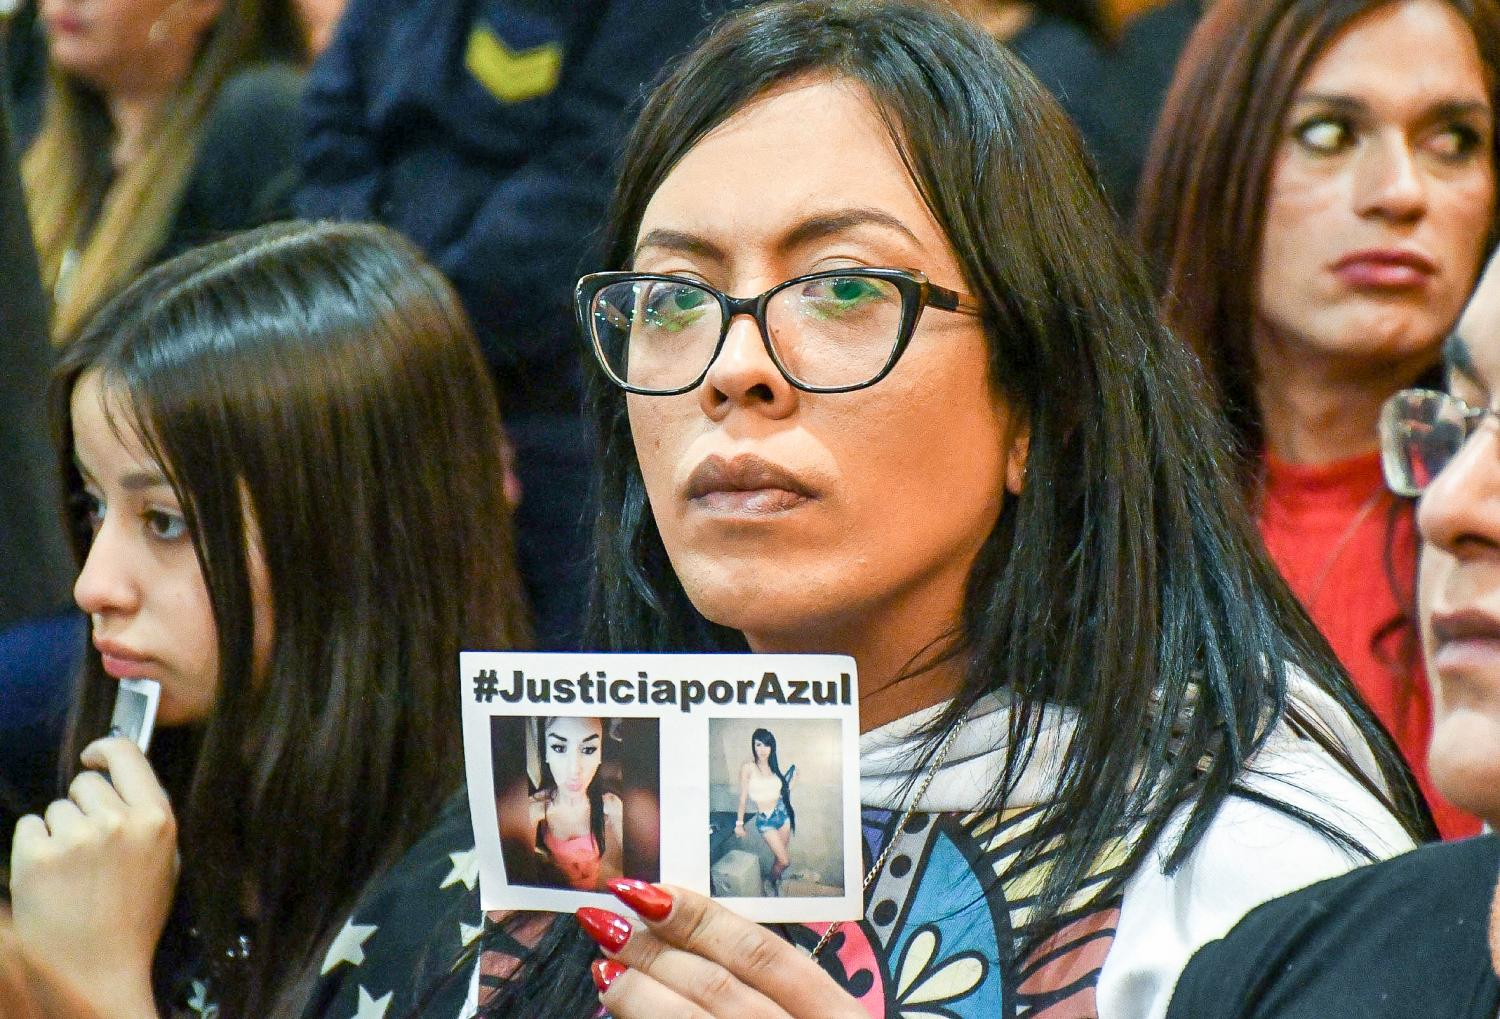 Compañeras de Azul y militantes feministas siguieron de cerca el caso y lucharon desde el principio para que fuera considerado femicidio..